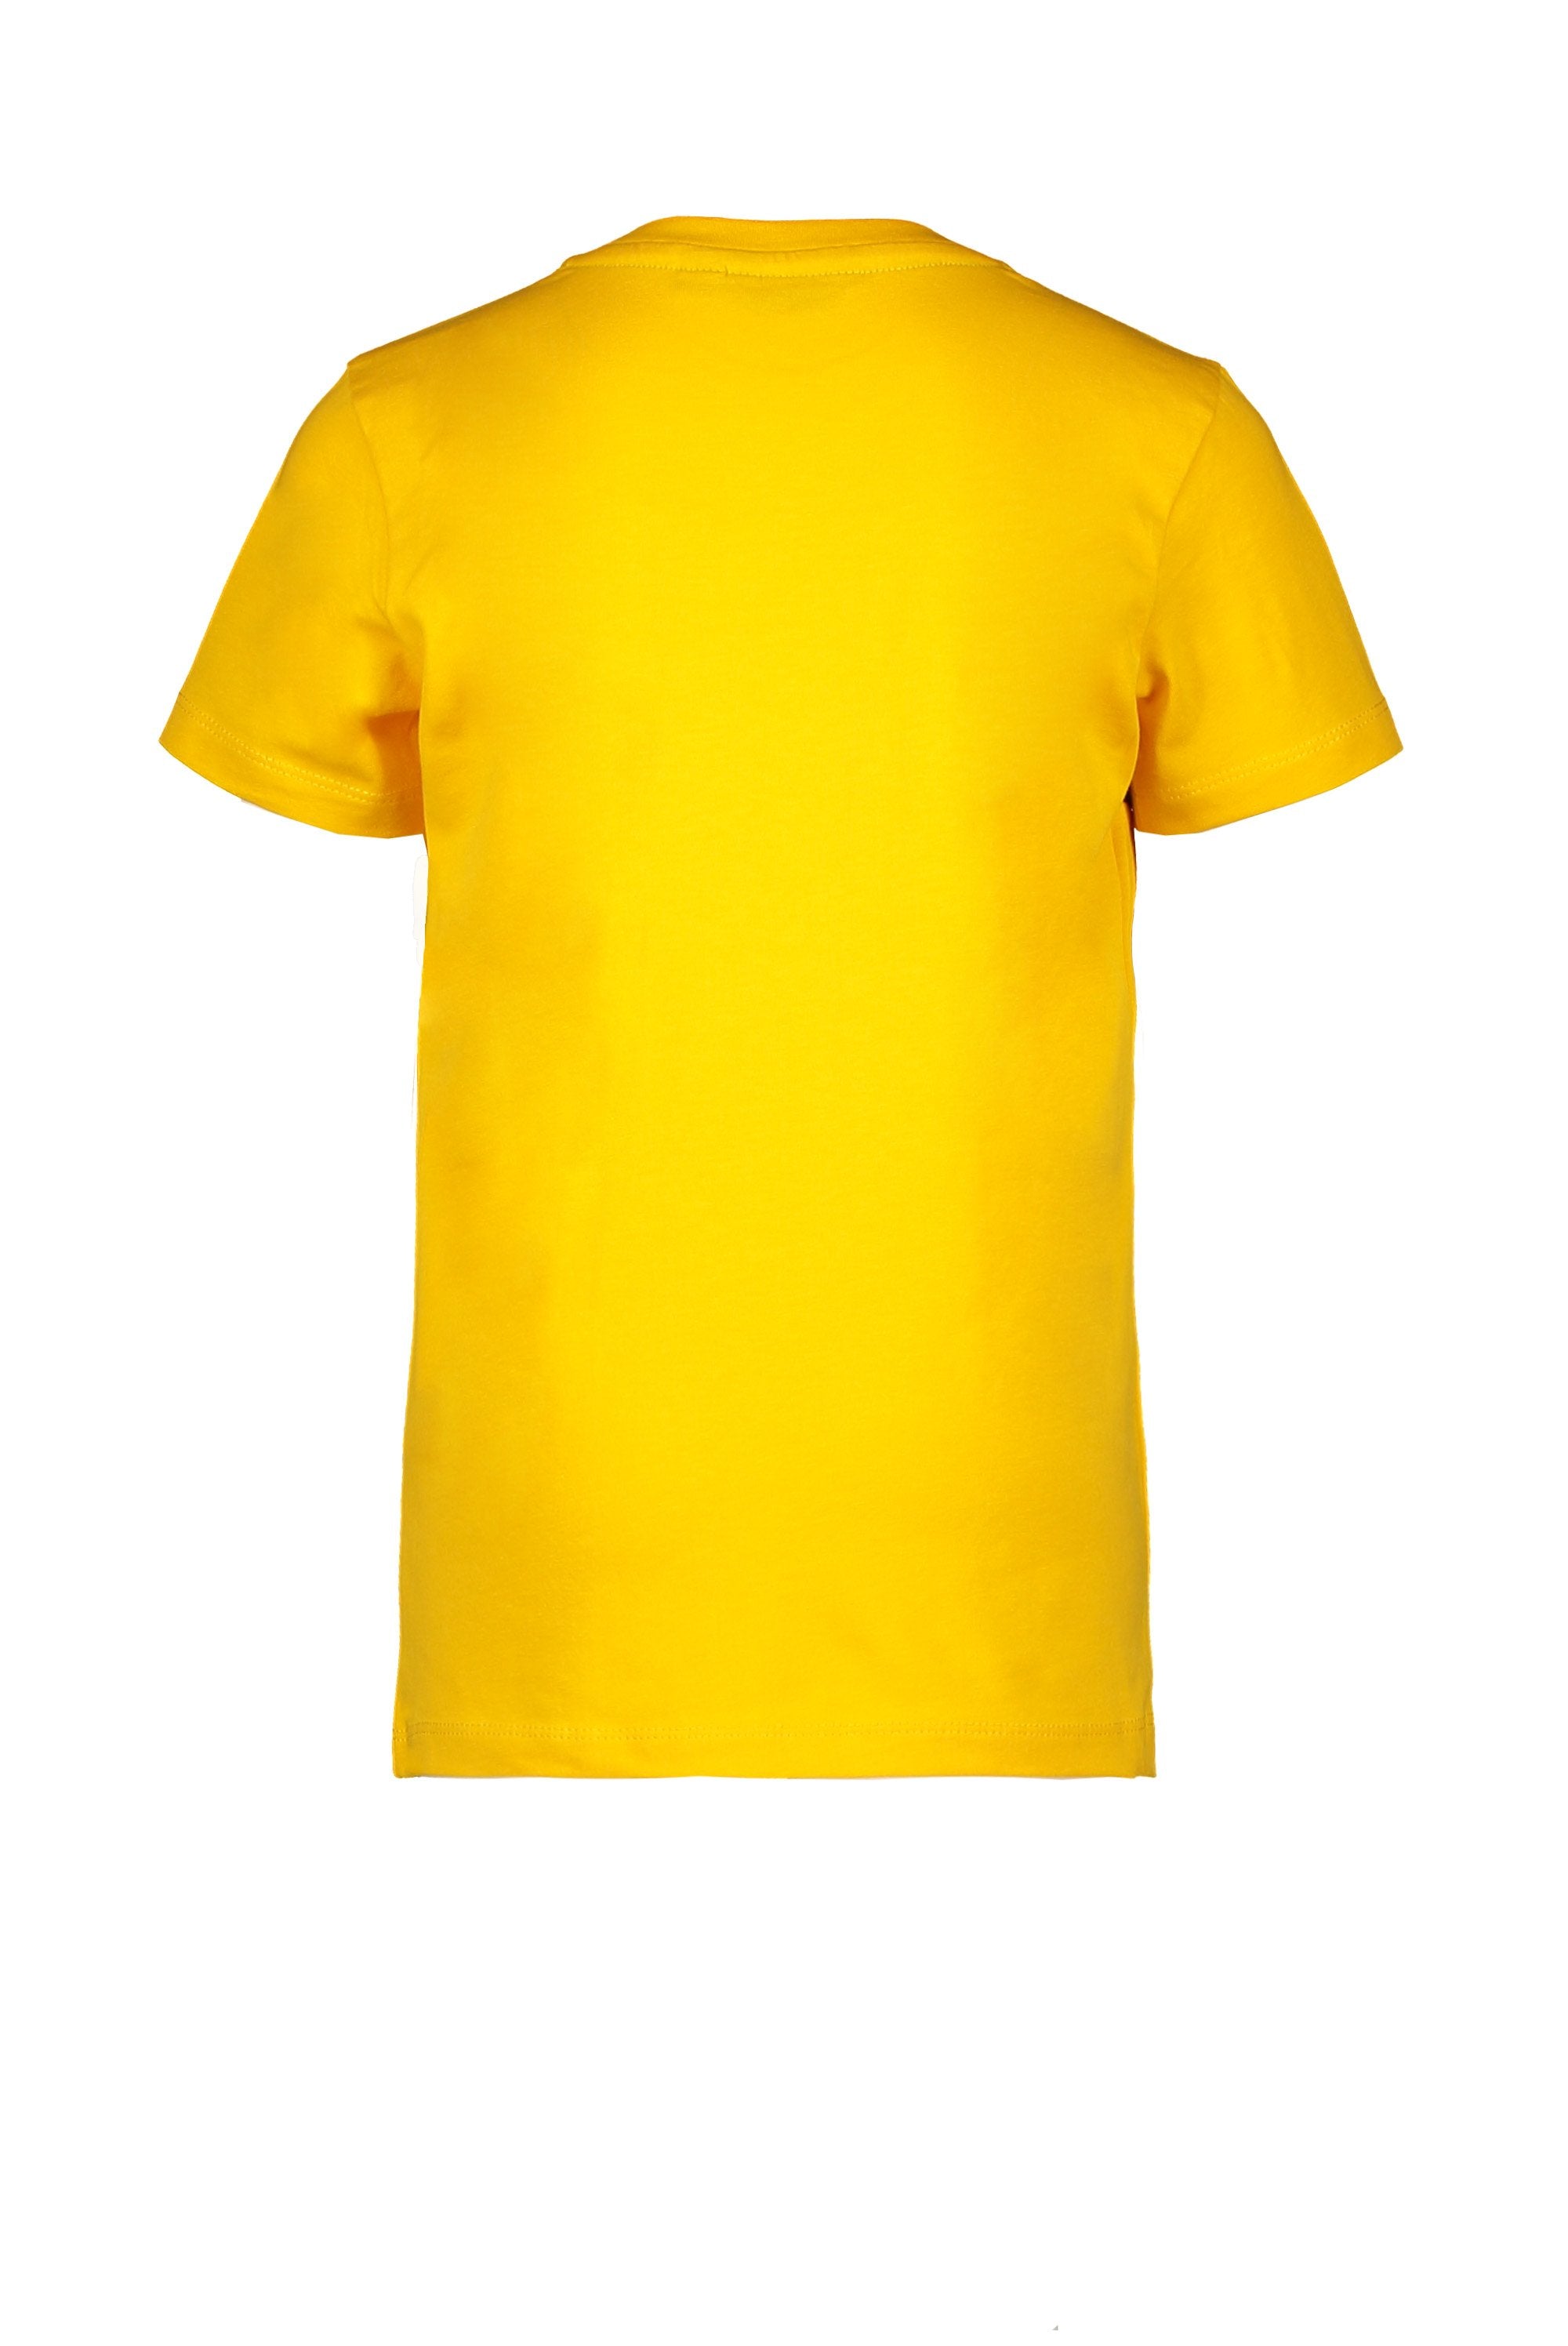 Jongens T-Shirt Contrast Stroke van Moodstreet in de kleur Dark Yellow in maat 122/128.